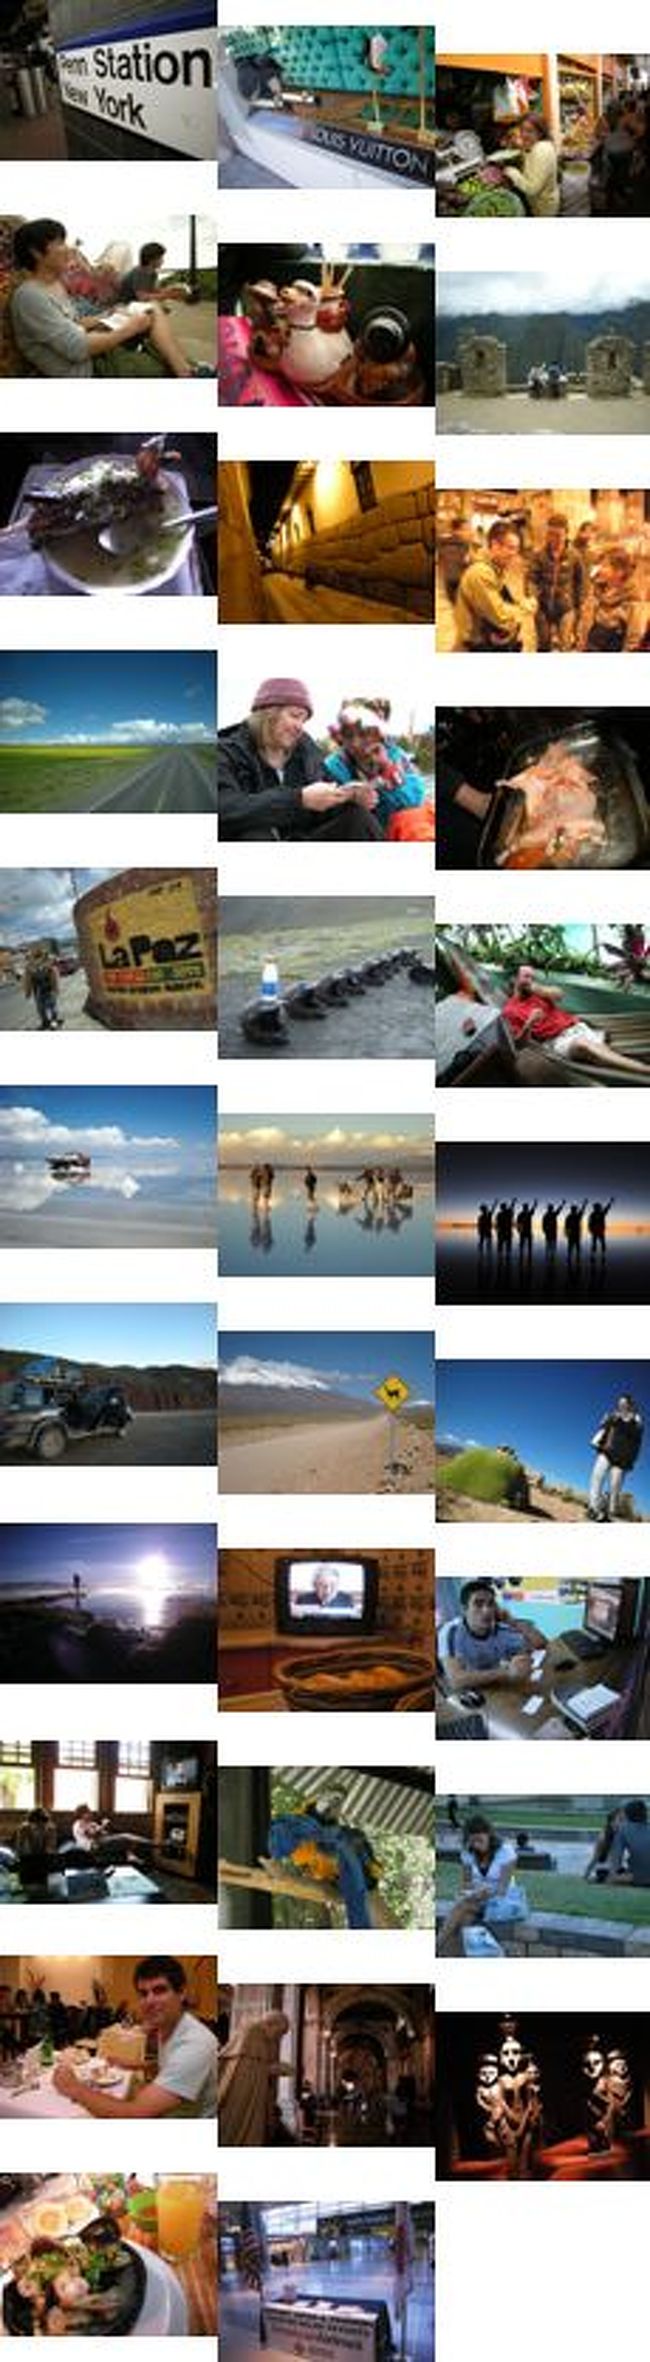 学生最後だし南米縦断するか。<br />そんなノリで始まった今回の1ヶ月海外1人旅。<br /><br />1人旅だったはずが、まさかの。。。<br /><br /><br />▼アマンタニ編の詳細はこちら<br />南米1ヶ月道づられ旅　～湖の島・アマンタニ～<br />http://blog.livedoor.jp/susa0asus/archives/51891620.html<br /><br /><br />▼旅の目次<br />http://blog.livedoor.jp/susa0asus/archives/51909326.html<br /><br />2月24日<br />　はじまりの街・ニューヨーク<br />2月25日～26日<br />　歴史の街・リマ<br />2月27日～28日<br />　石組みの街・クスコ<br />3月1日～3日<br />　遺跡の街・マチュピチュ<br />3月4日<br />　湖畔の街・プーノ<br />3月5日～6日<br />　湖の島・アマンタニ<br />3月7日<br />　半島の街・コパカバーナ<br />3月8日～10日<br />　殺伐の街・ラパス<br />3月11日～12日<br />　塩の街・ウユニ<br />3月13日<br />　砂漠と高山の街・不明<br />3月14日<br />　平屋の街・サンペドロデアタカマ<br />3月15日～16日<br />　北の街・サルタ<br />3月17日～18日<br />　滝の街・プエルトイグアス<br />（消えた3月19日）<br />3月20日<br />　ワインの街・メンドーサ<br />3月21日～22日<br />　都会の街・サンティアゴ<br /><br />